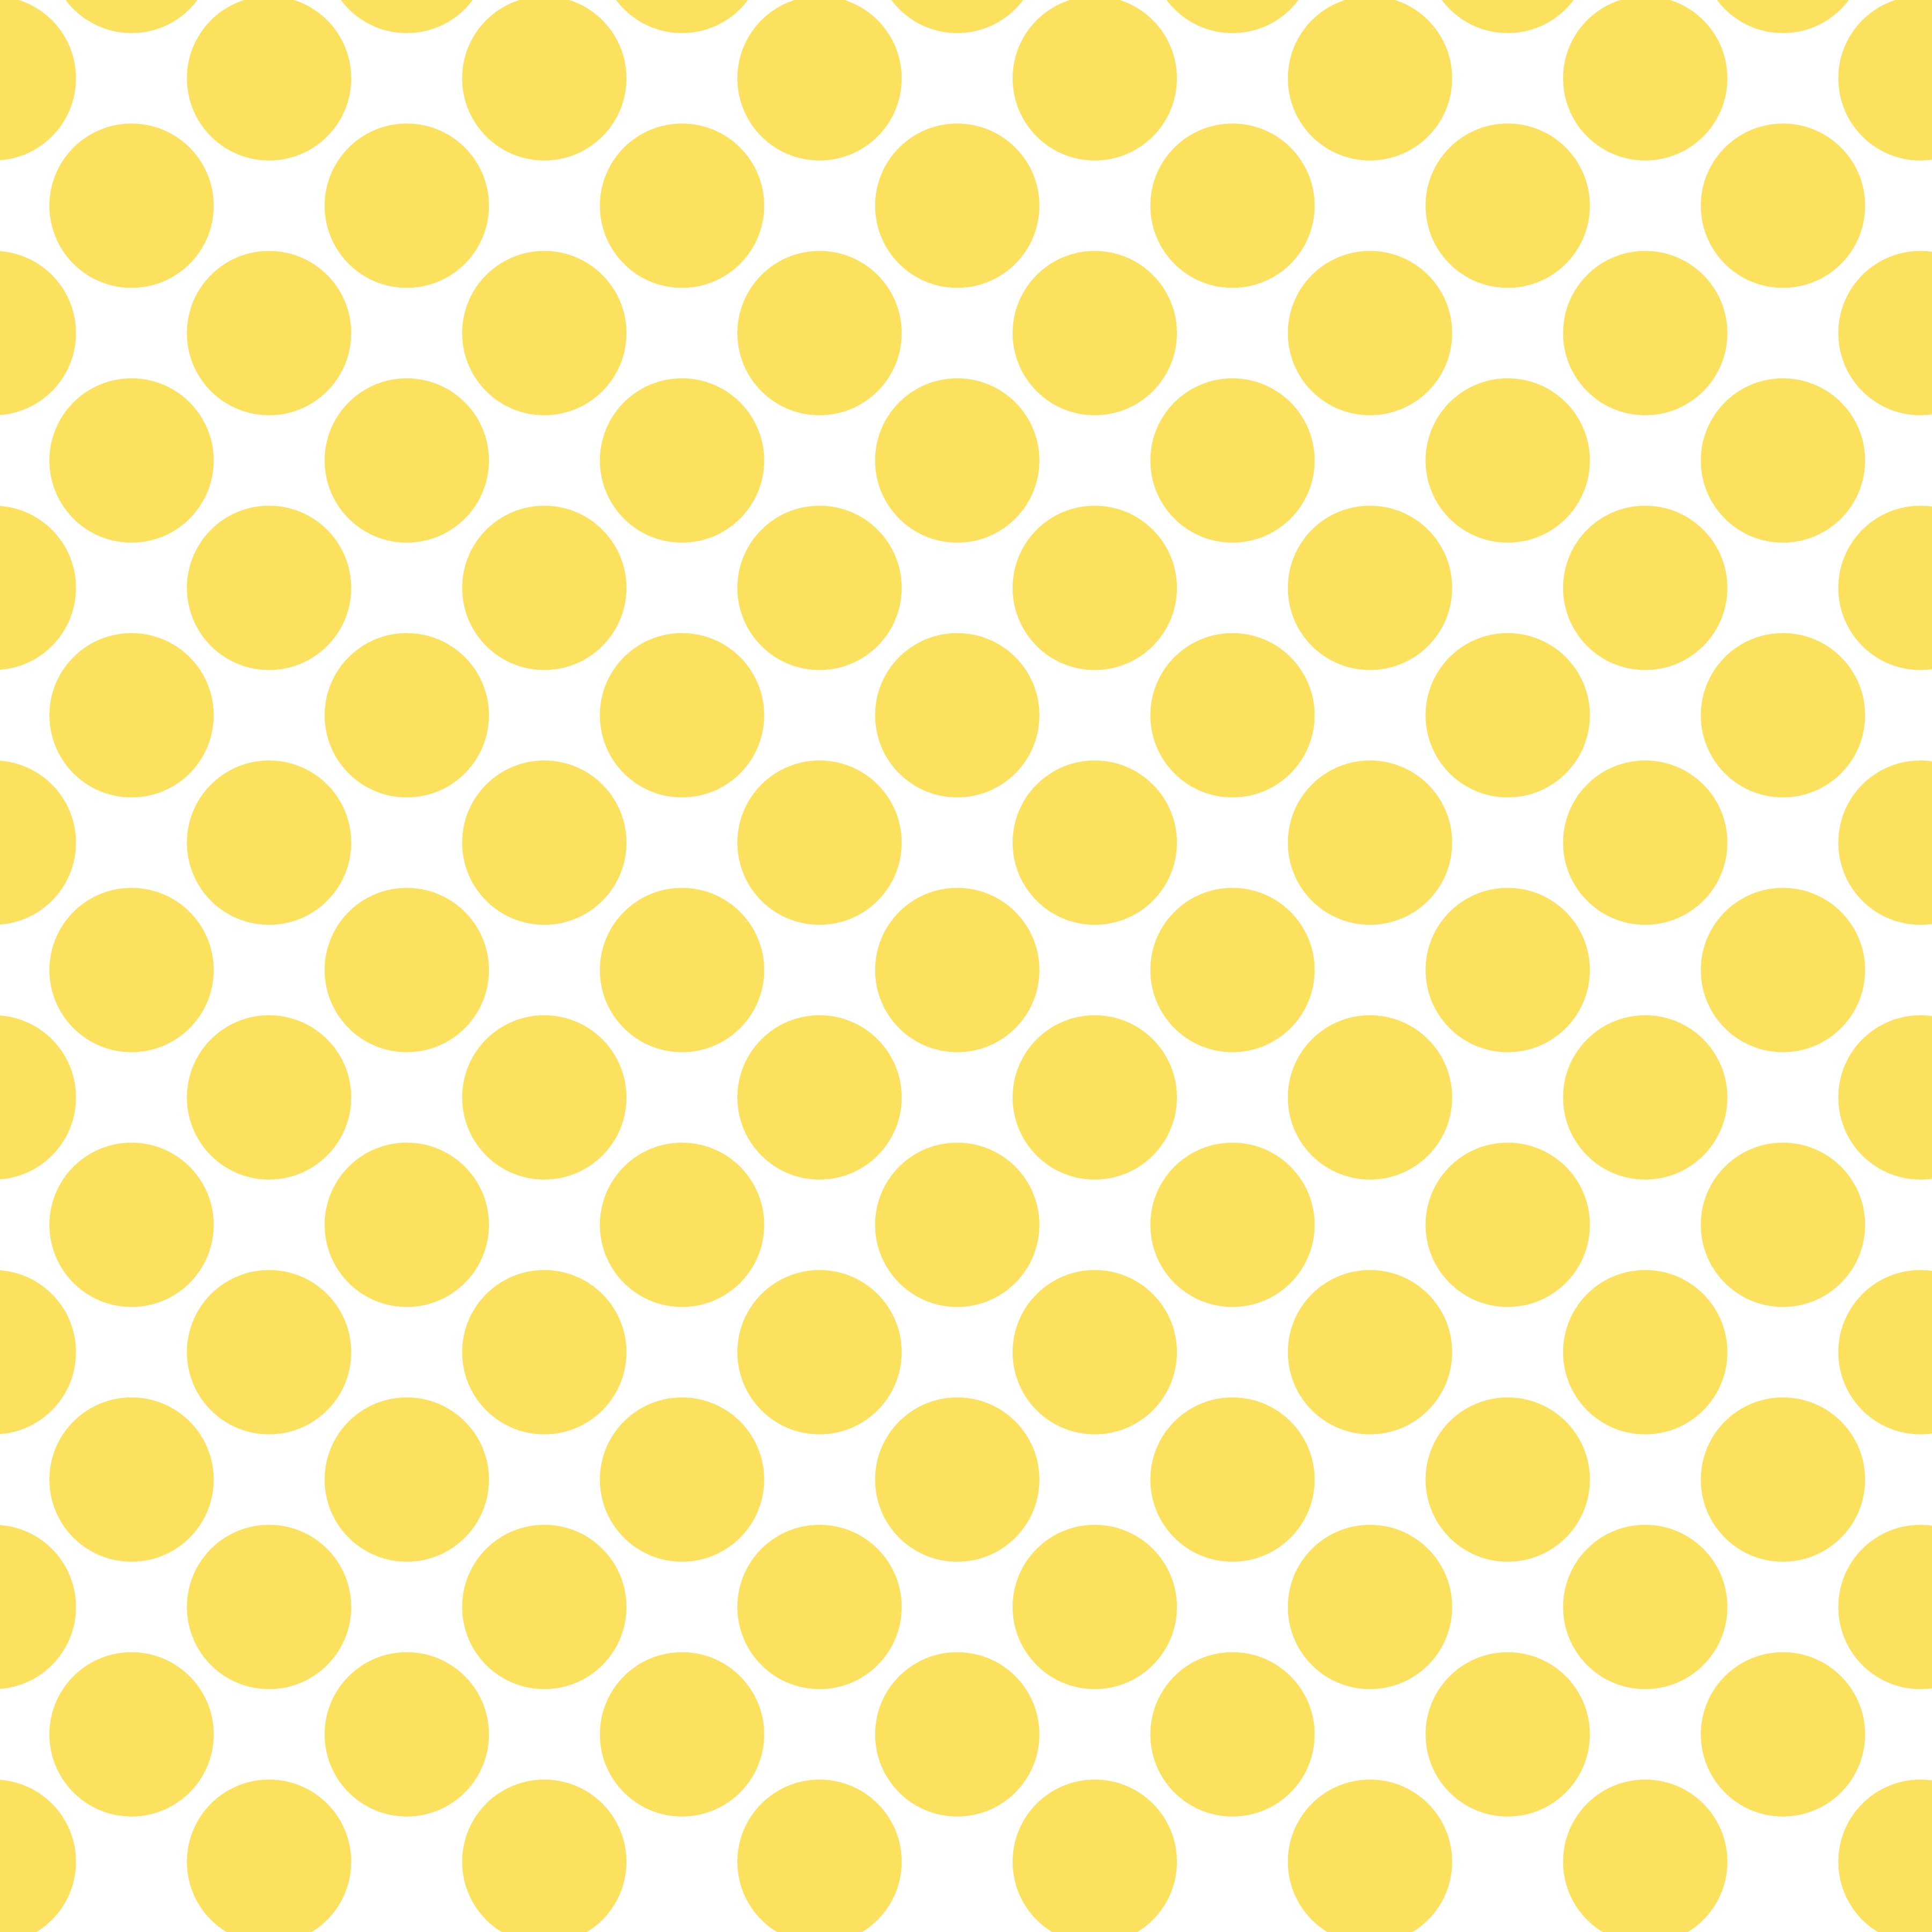 Polka Dot 1 cm Beyaz - Altuni Sarı Puantiye Dekoratif Baskı Kumaş